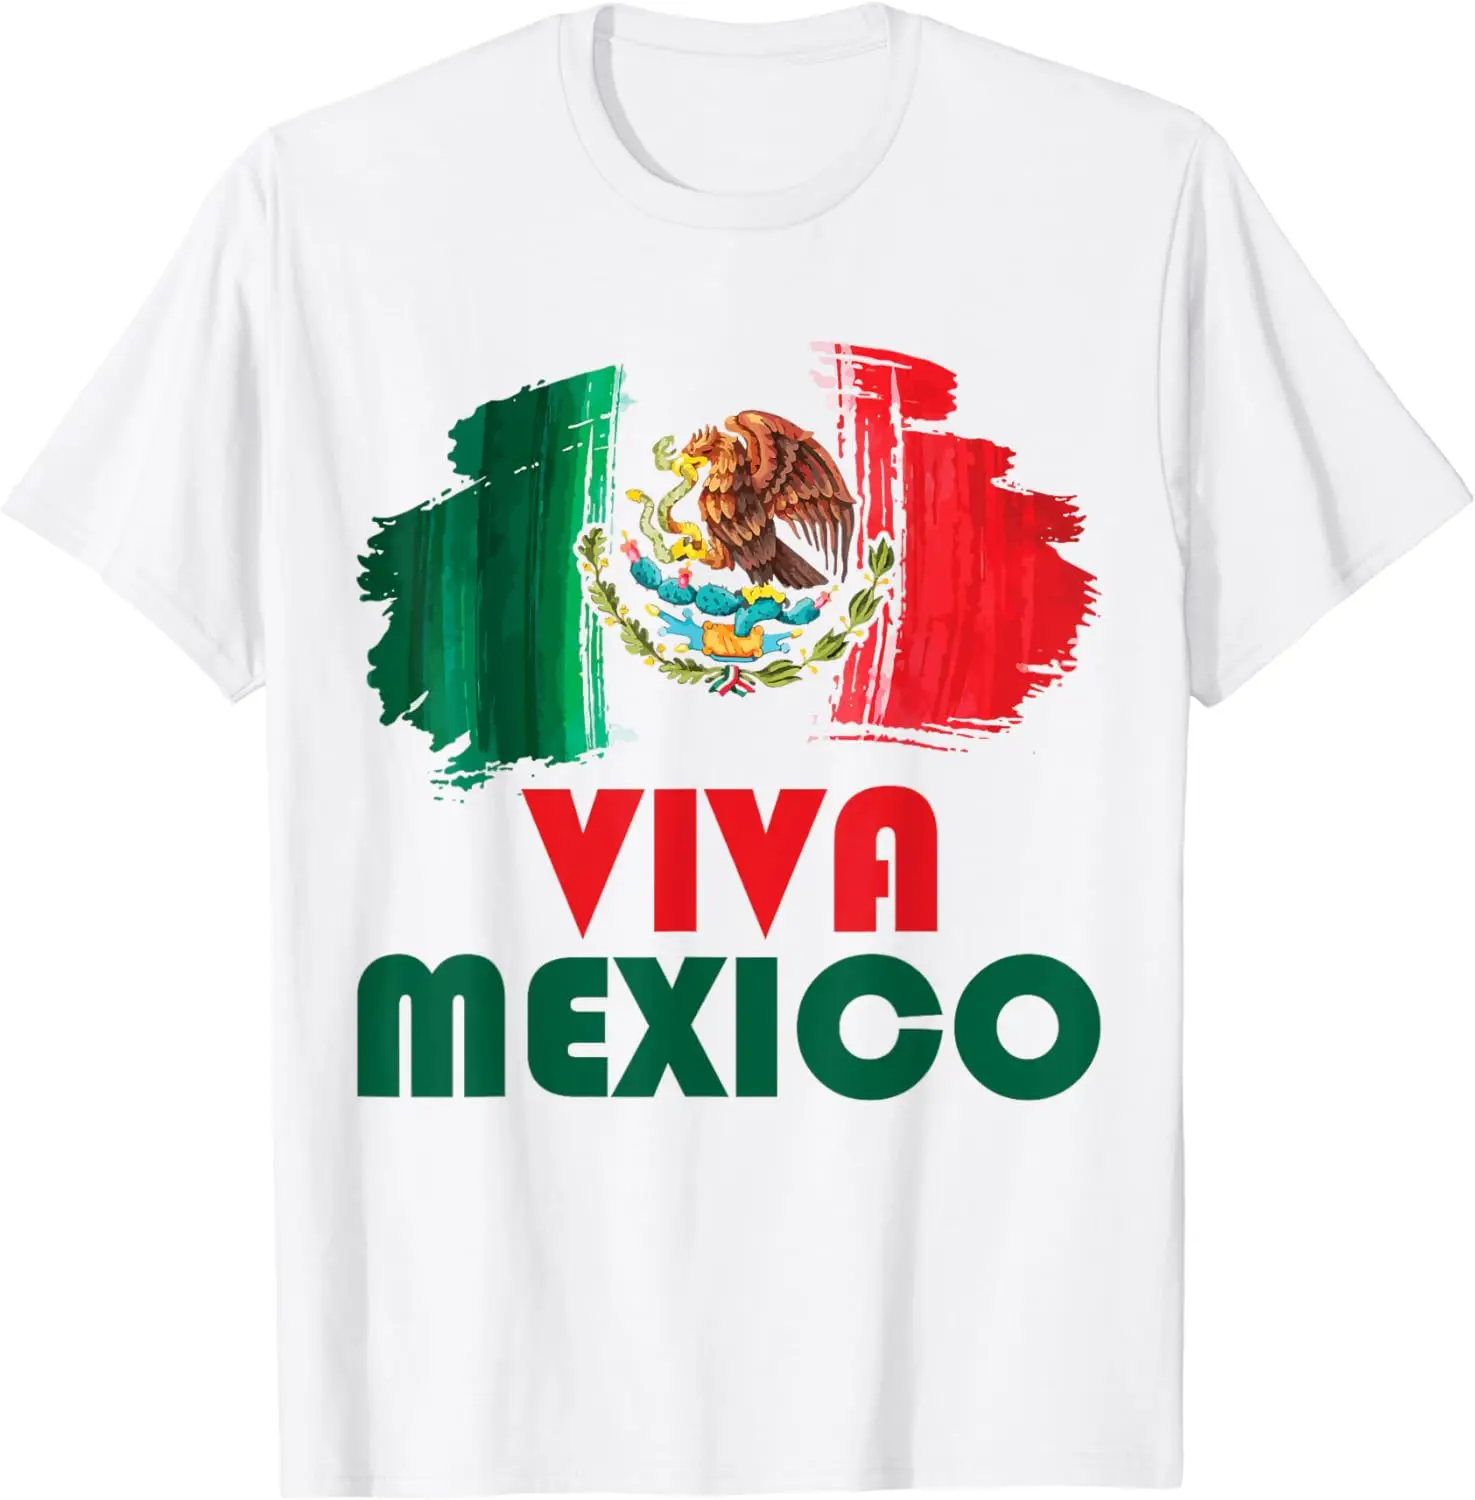 

Футболка Viva с флагом Мексики для детей, малышей, День независимости Мексики для мужчин и женщин, Подростковая хлопковая Футболка большого размера машинной стирки